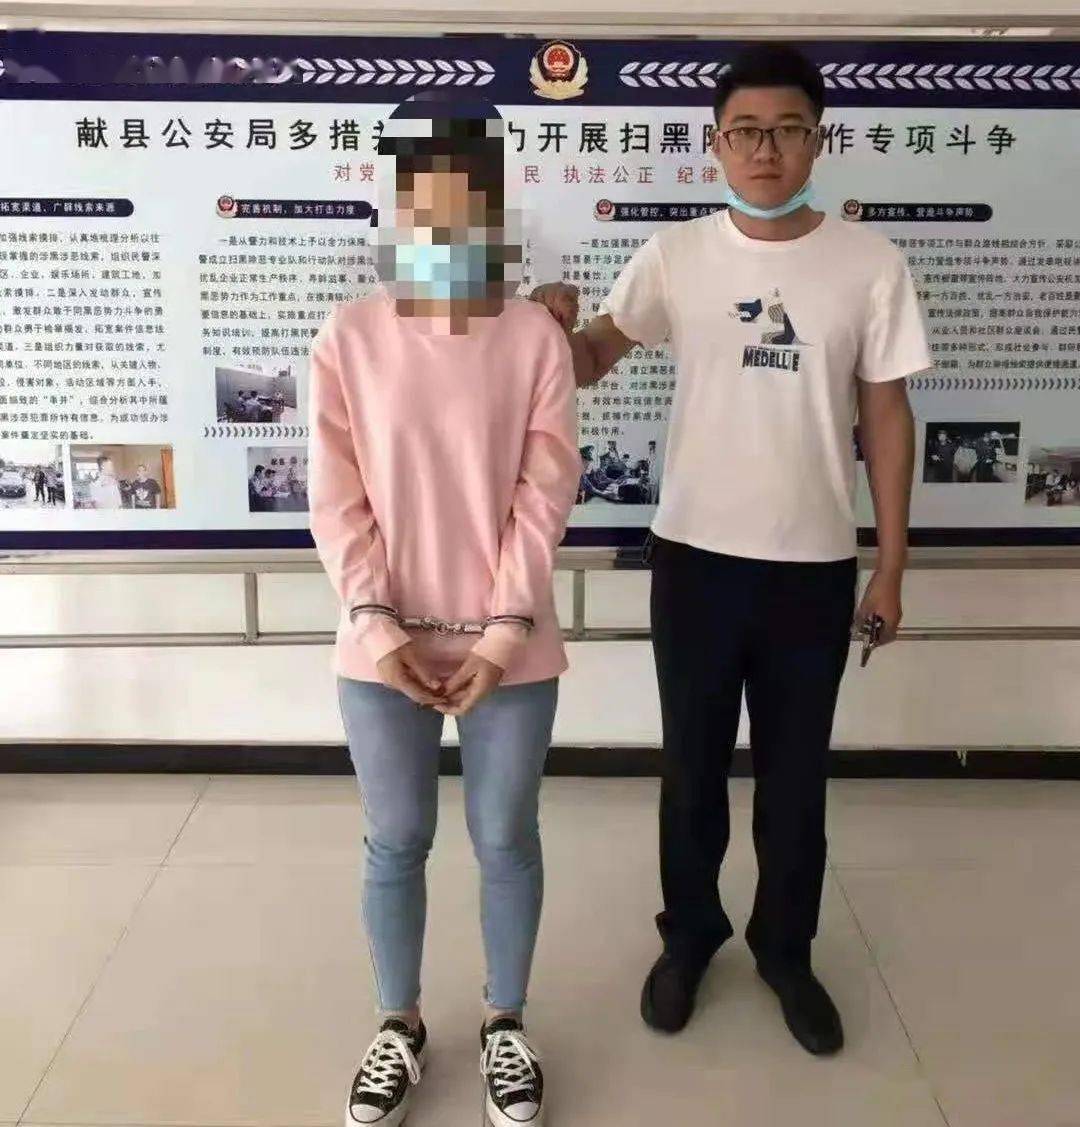 目前,犯罪嫌疑人郑某(女,31岁,乐寿镇人)已被献县警方依法刑事拘留